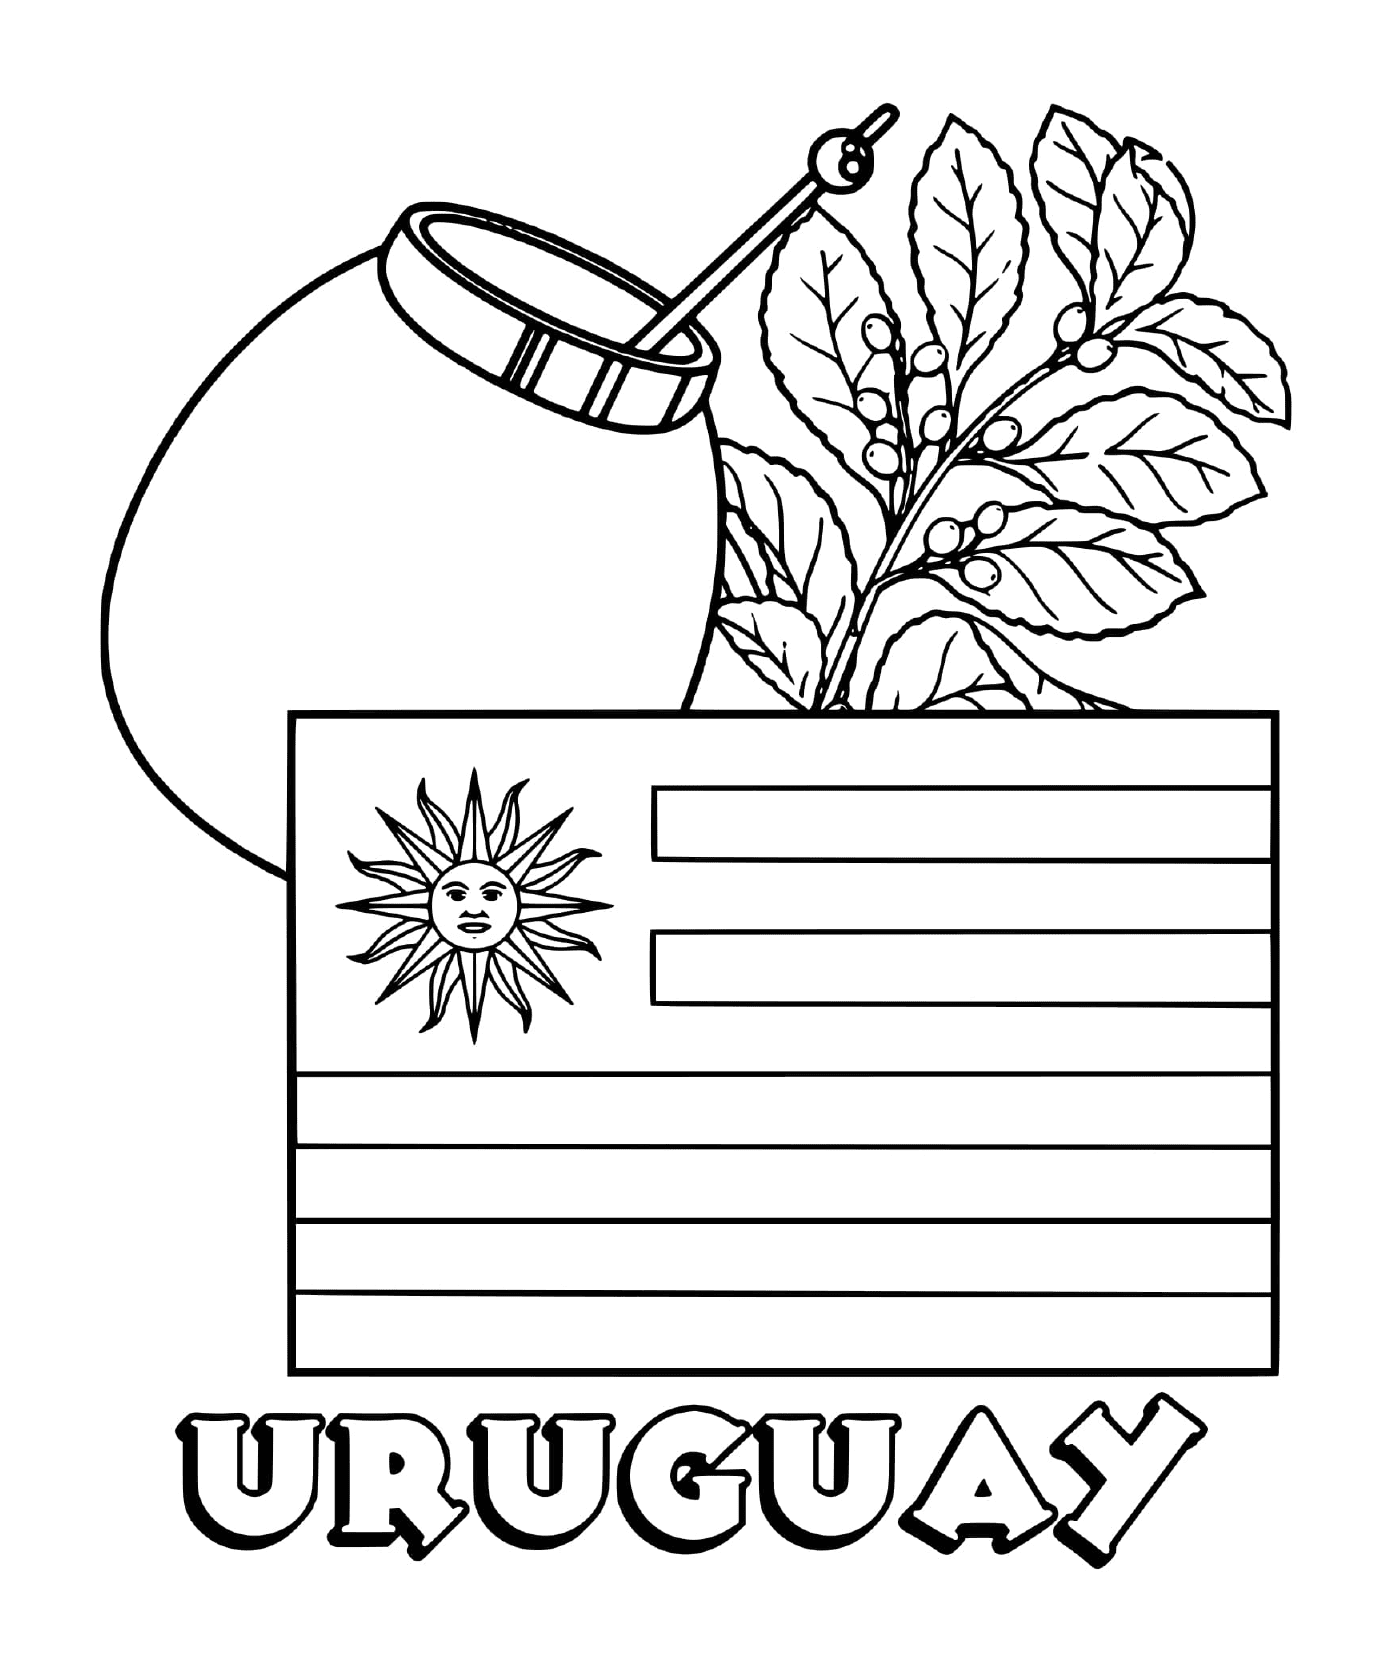  uruguayische Flagge, jaba matt 